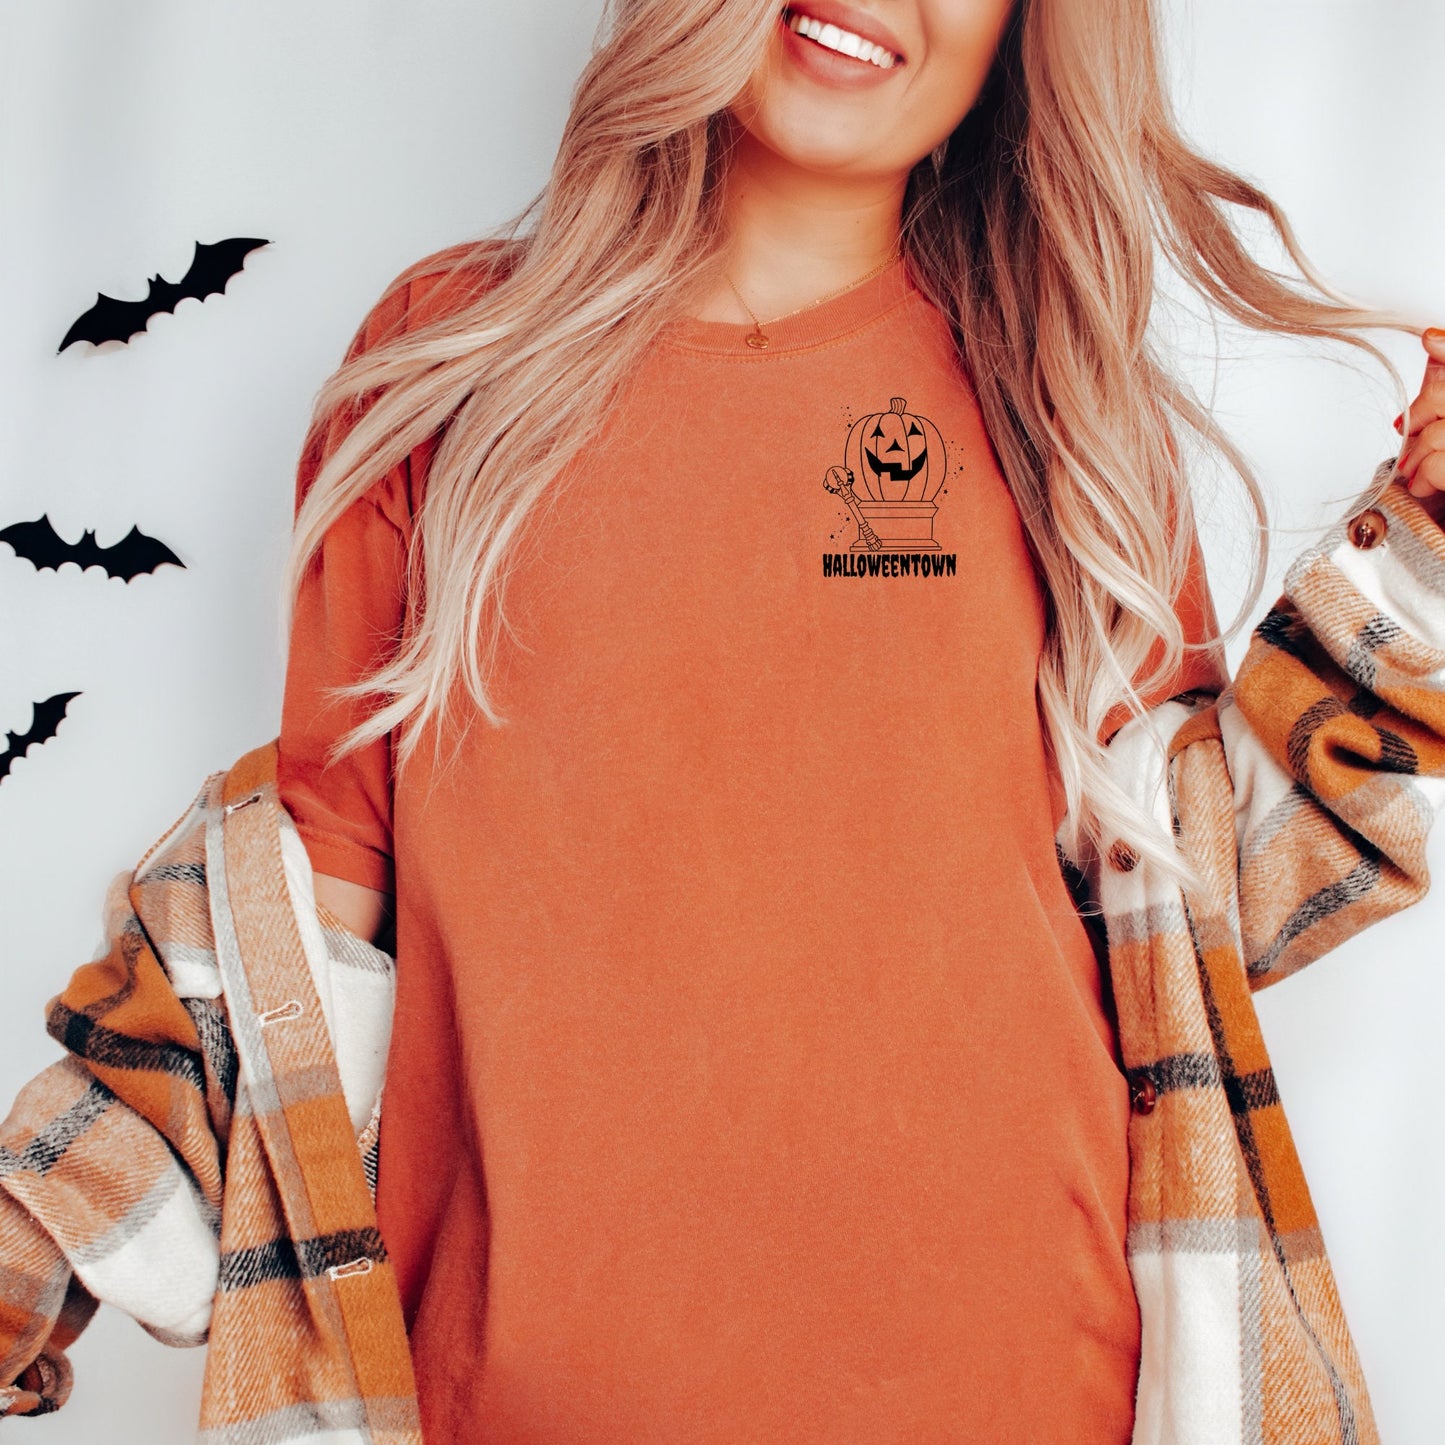 Halloweentown shirt, Halloweentown university, Vintage Halloween Sweater, Halloween Town sweater, Retro halloweentown